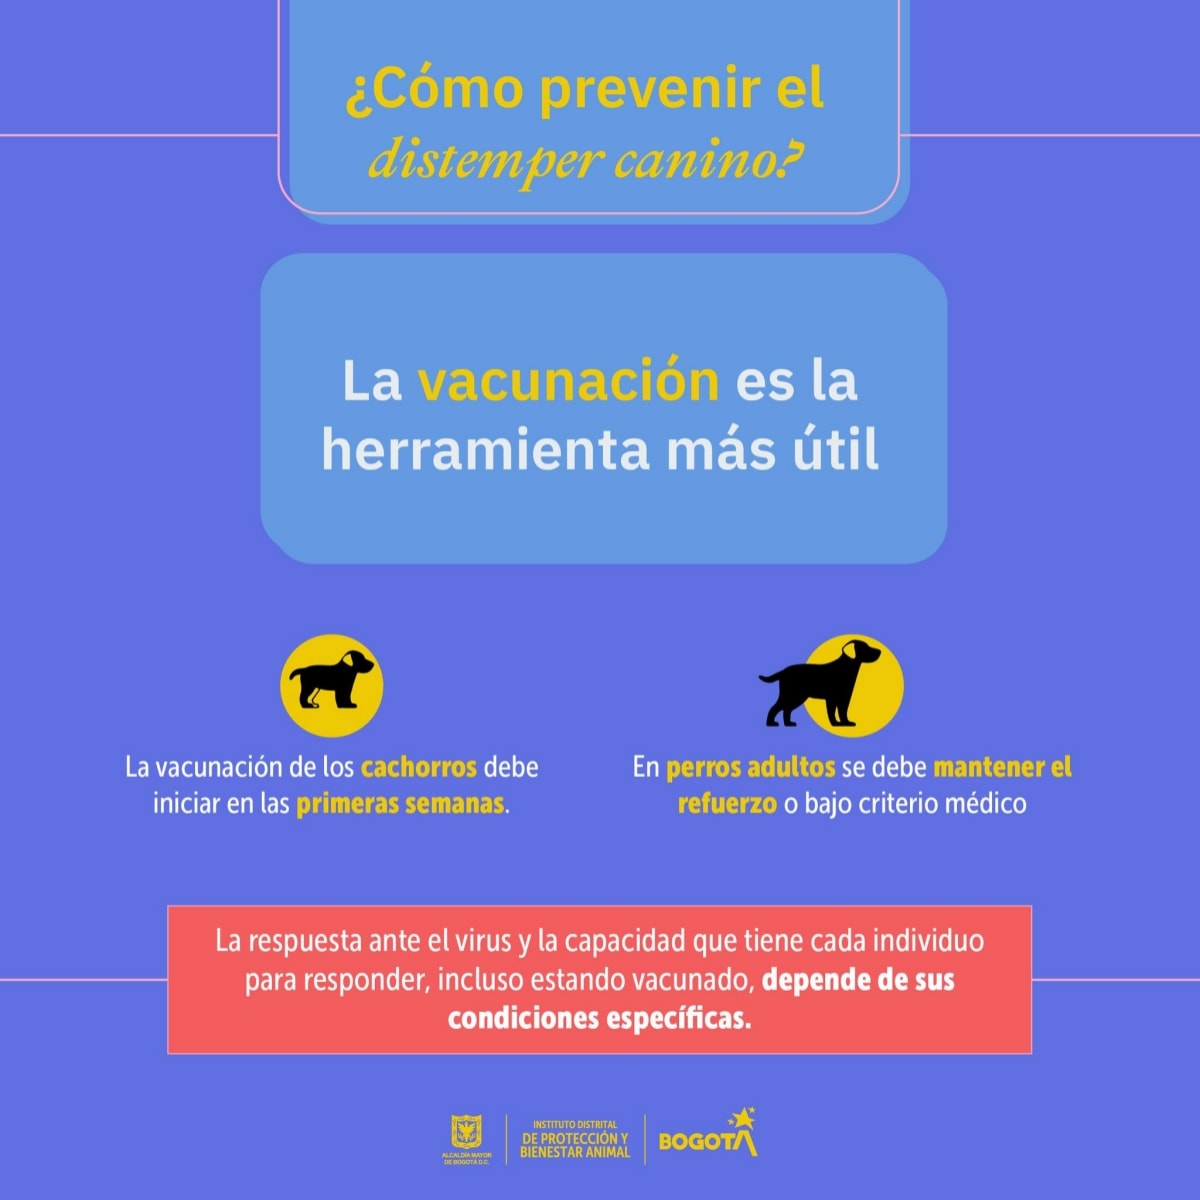 27-07-2022, Noticia: Brote de Moquillo / Distemper Canino en Bogotá